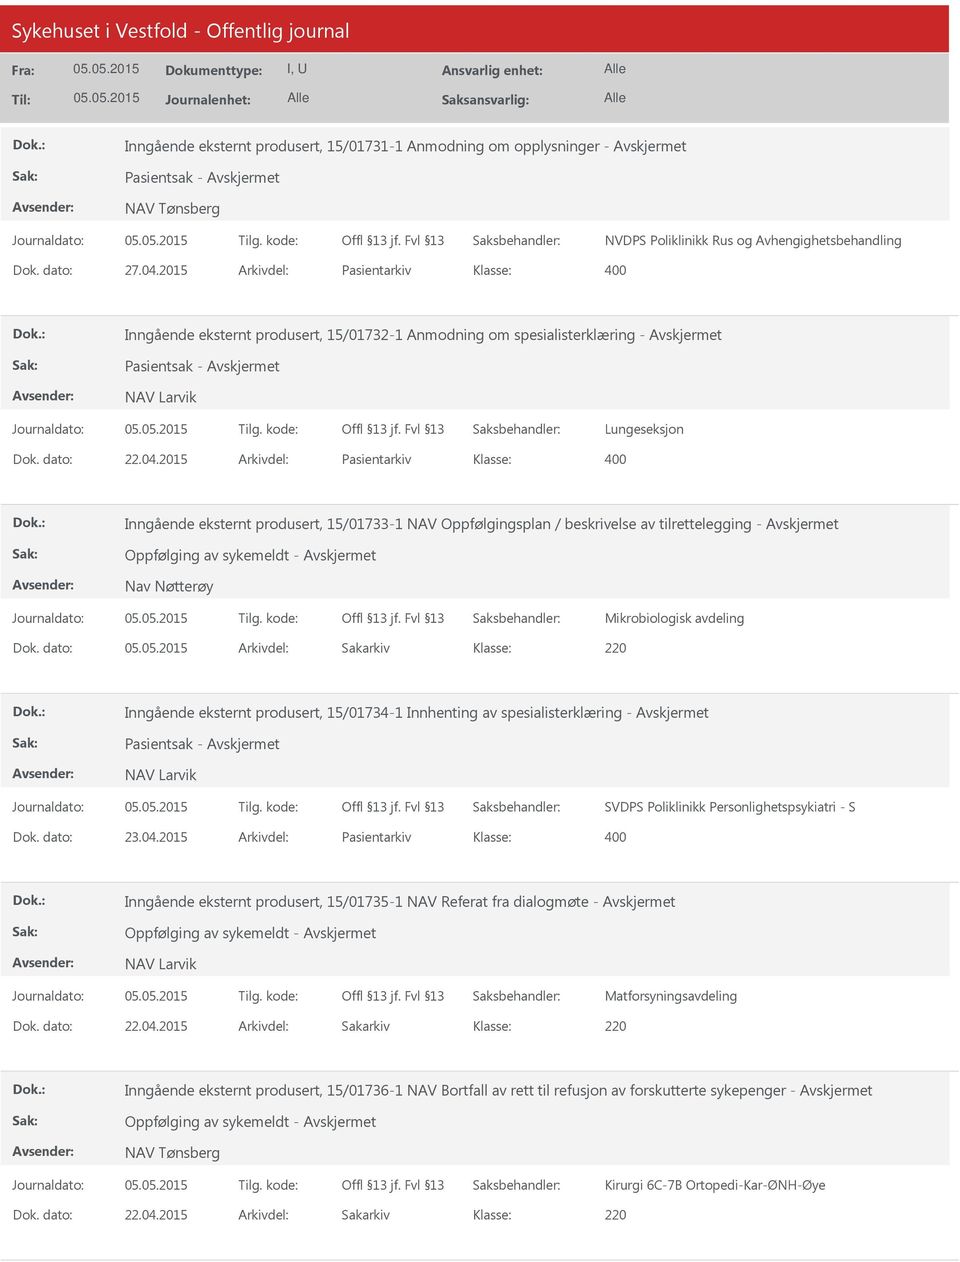 2015 Arkivdel: Pasientarkiv Inngående eksternt produsert, 15/01733-1 NAV Oppfølgingsplan / beskrivelse av tilrettelegging - Oppfølging av sykemeldt - Nav Nøtterøy Mikrobiologisk avdeling Dok.